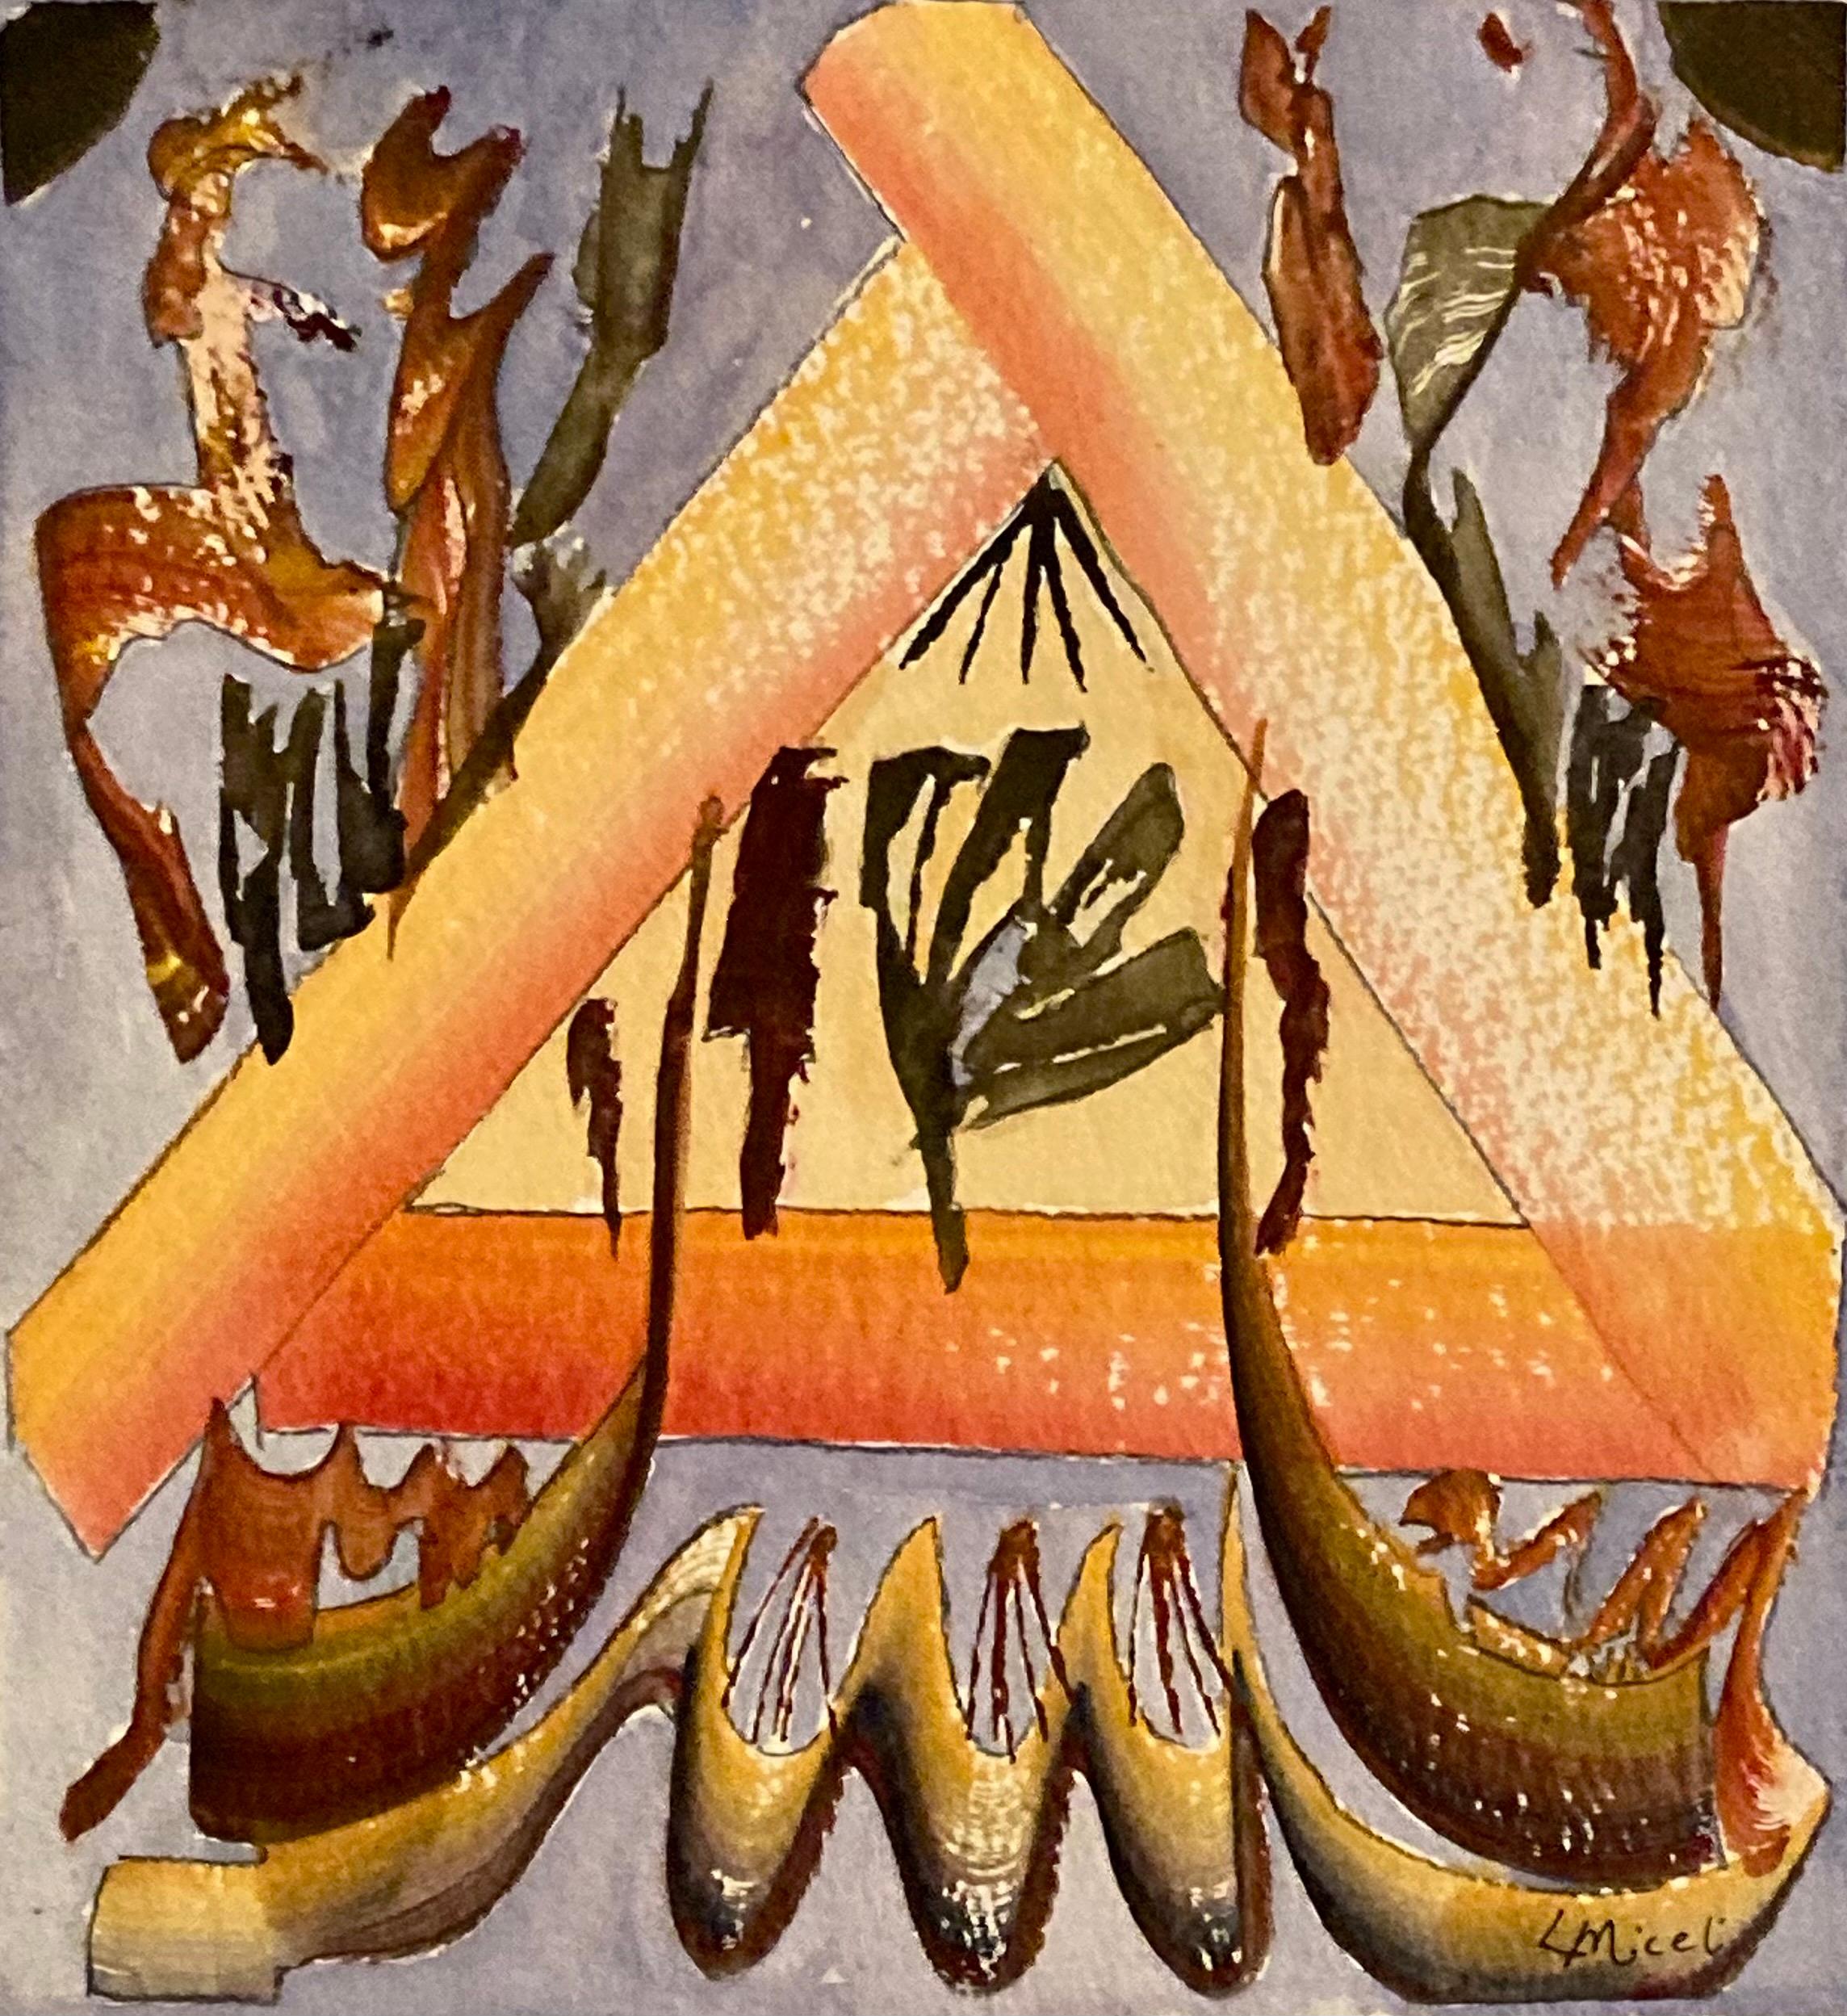 Dieses 10" x 11" große Aquarell auf Papier von Lisa Miceli zeigt eine fantasievolle, abstrahierte Landschaft, die an eine warme Herdumgebung erinnert. Dieses Gemälde ist Teil der Serie latticeWorks. Die Verwendung von Farbe und kompositorischen